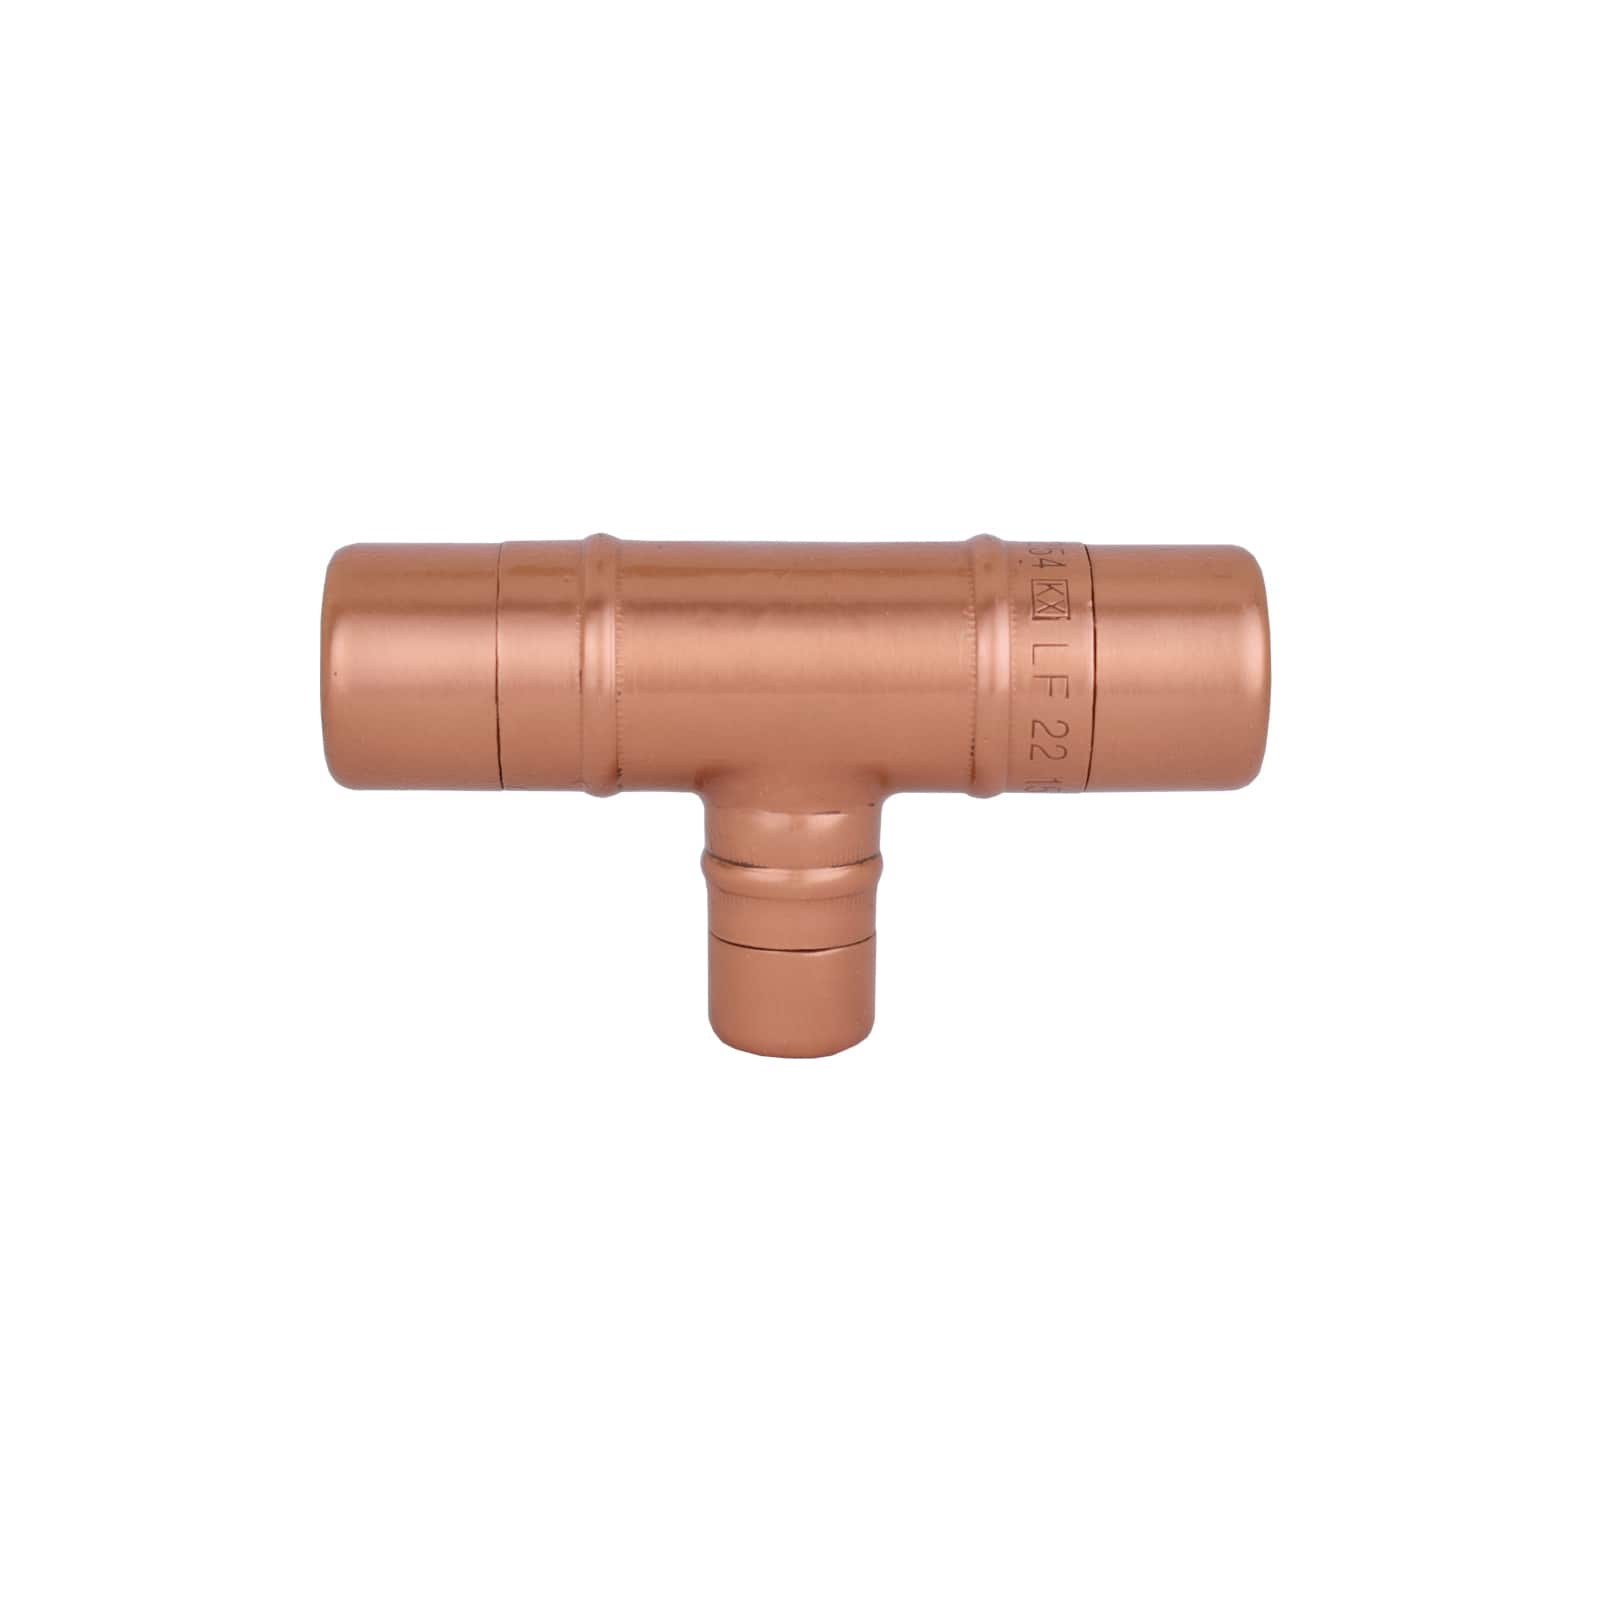 Copper Knob - T-shaped (Thick Bodied) - Proper Copper Design